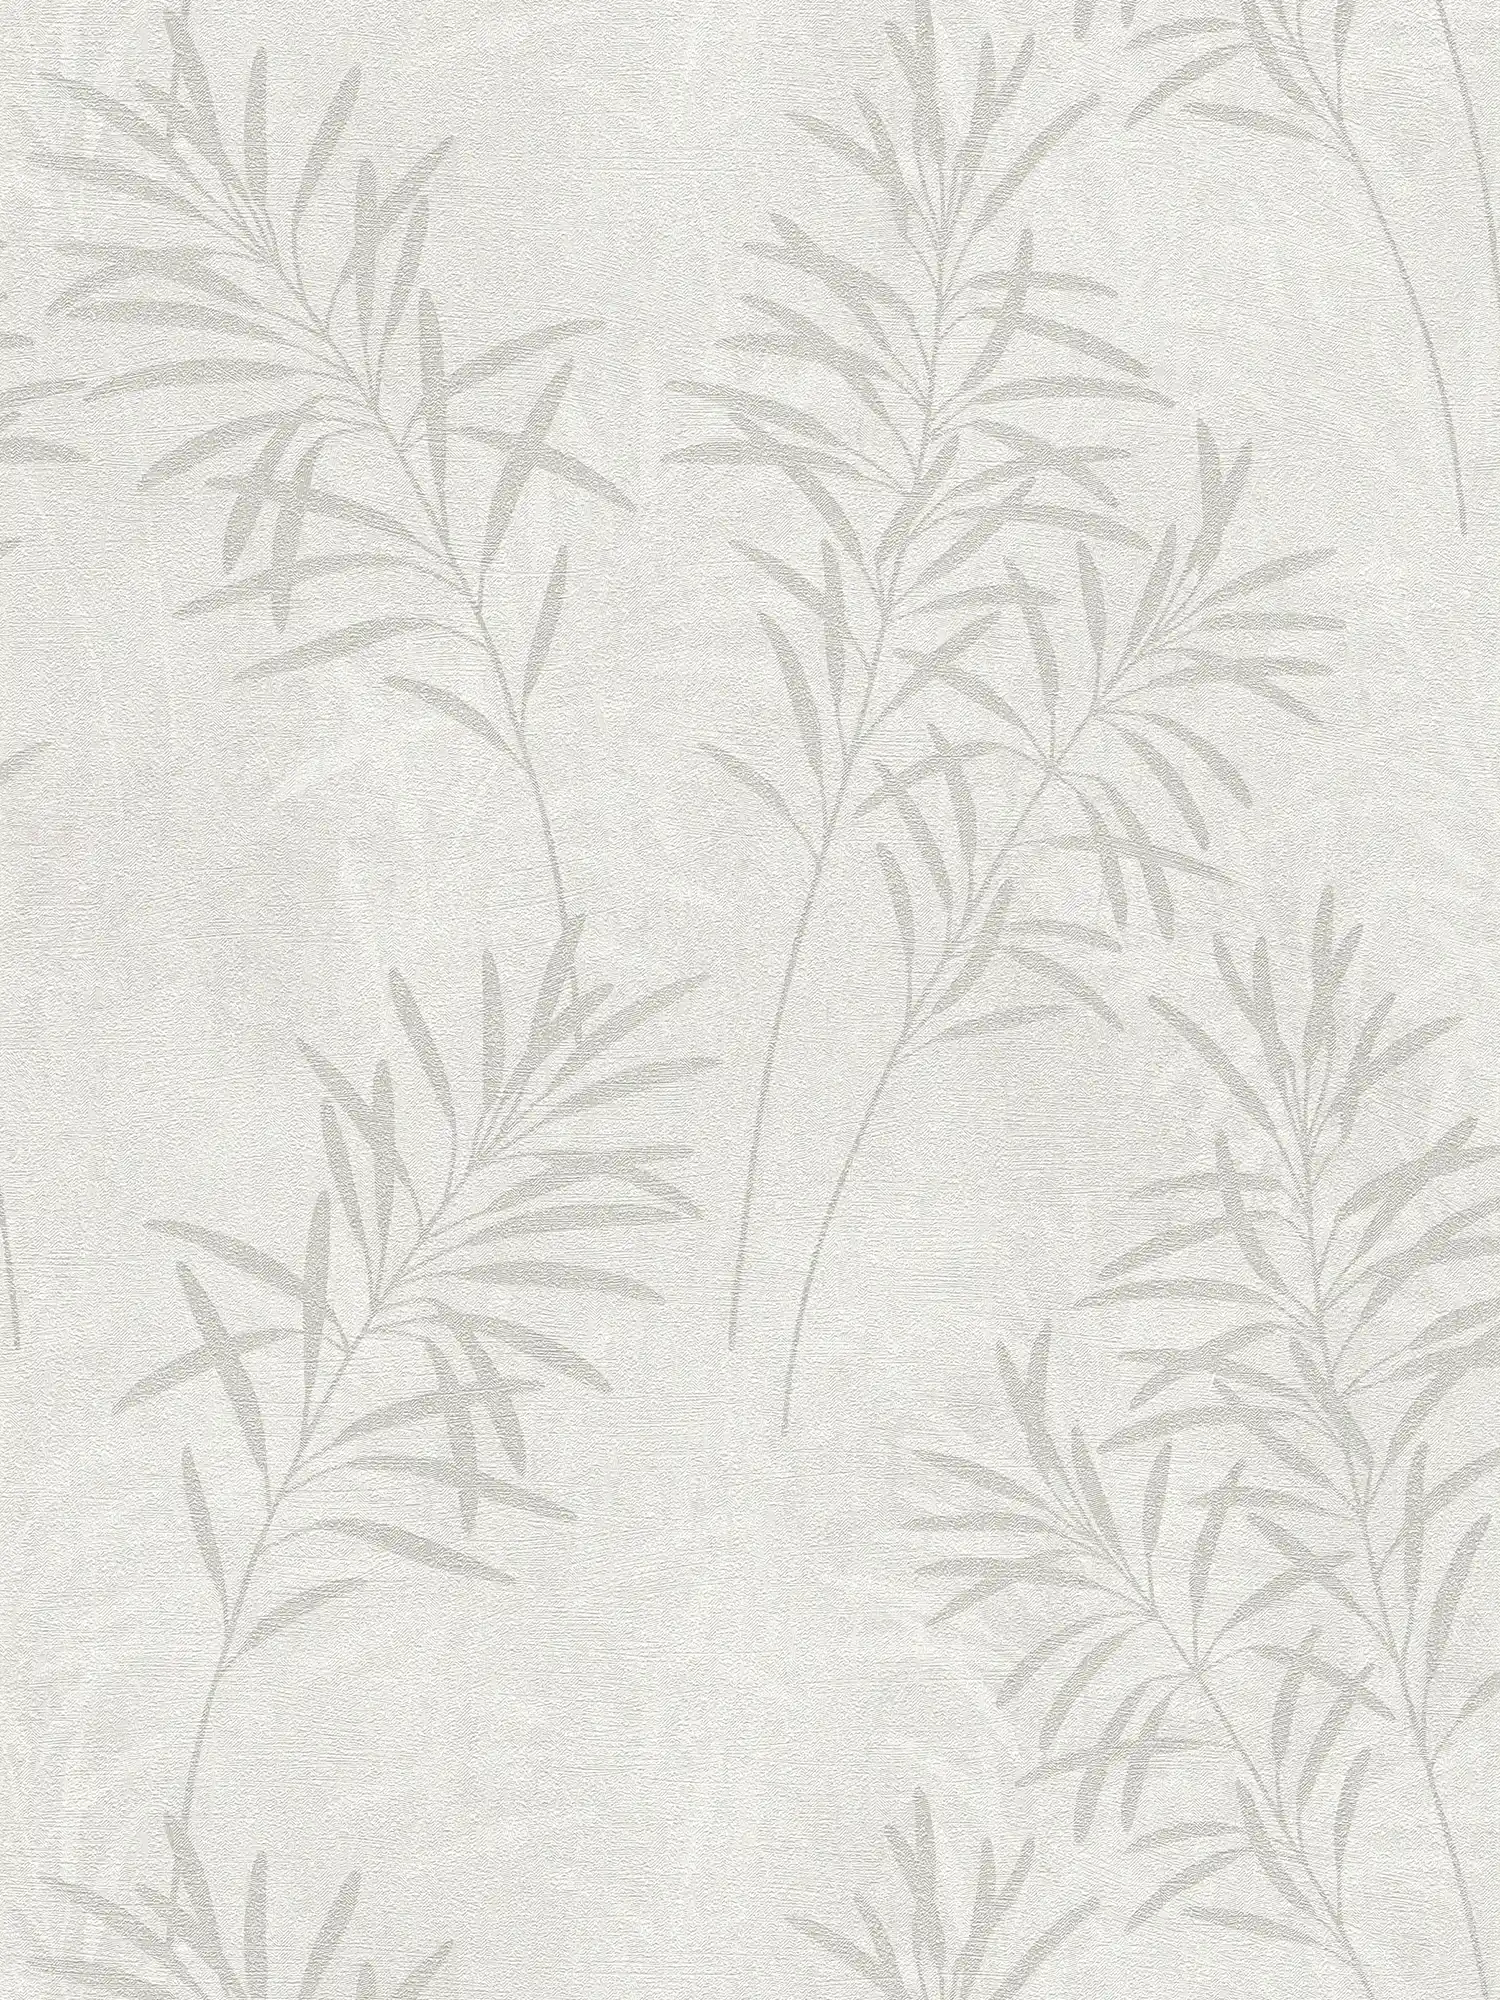 Florale Vliestapete mit Gräser-Muster und feiner Struktur – Weiß, Grau, Metallic
